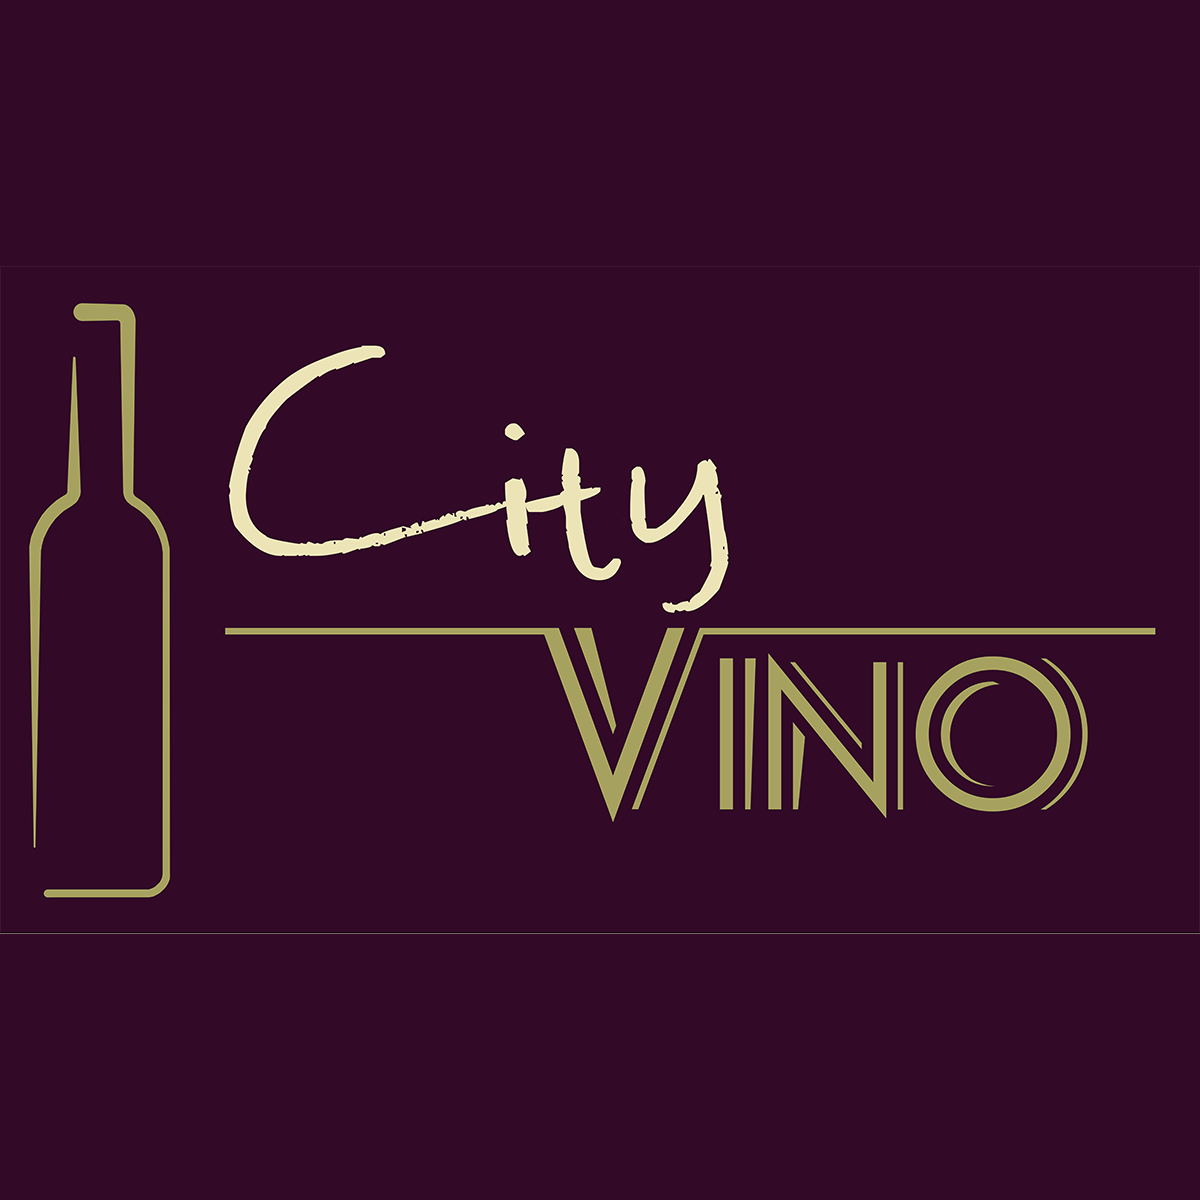 White Wine - City Vino,